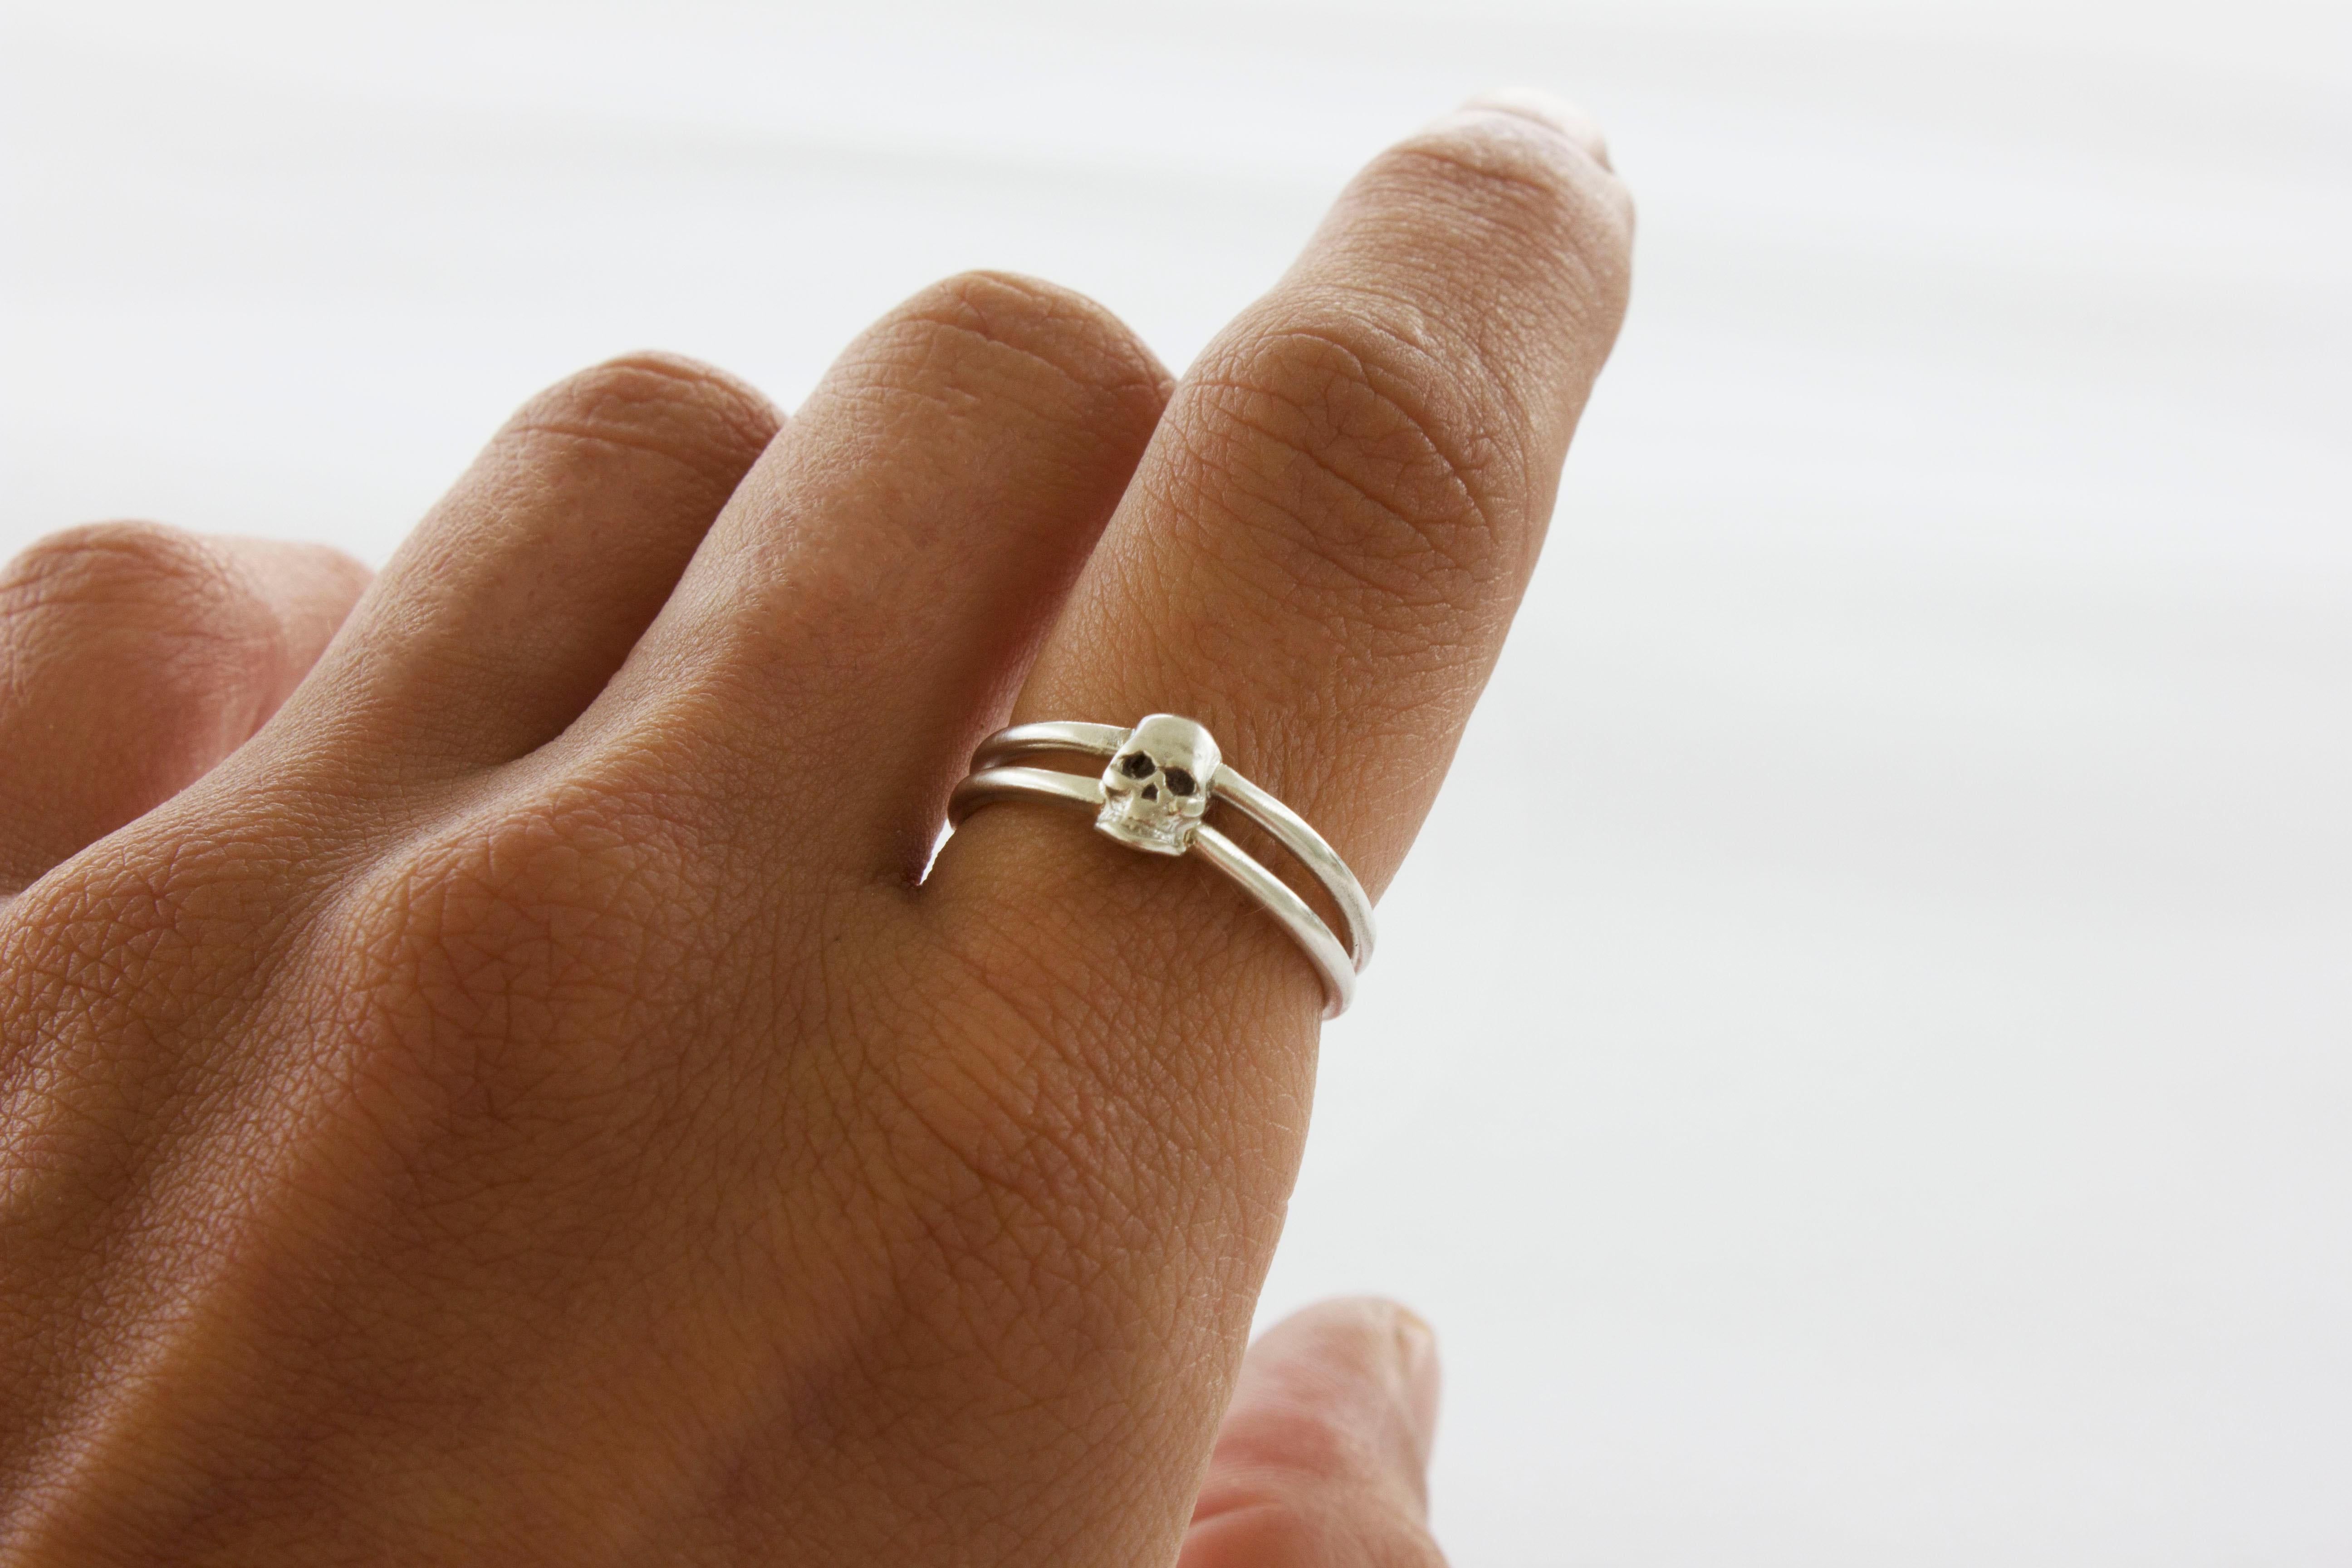 Ein winziger Ring mit einem Totenkopf als Schmuck für Ihren Finger.

Dieser Ring ist ein eleganter Alltagsring und kann auch getragen werden, um ein besonderes Outfit mit einem Hauch von Eleganz zu vervollständigen.

Der Schädel misst ca. 6,5 mm x